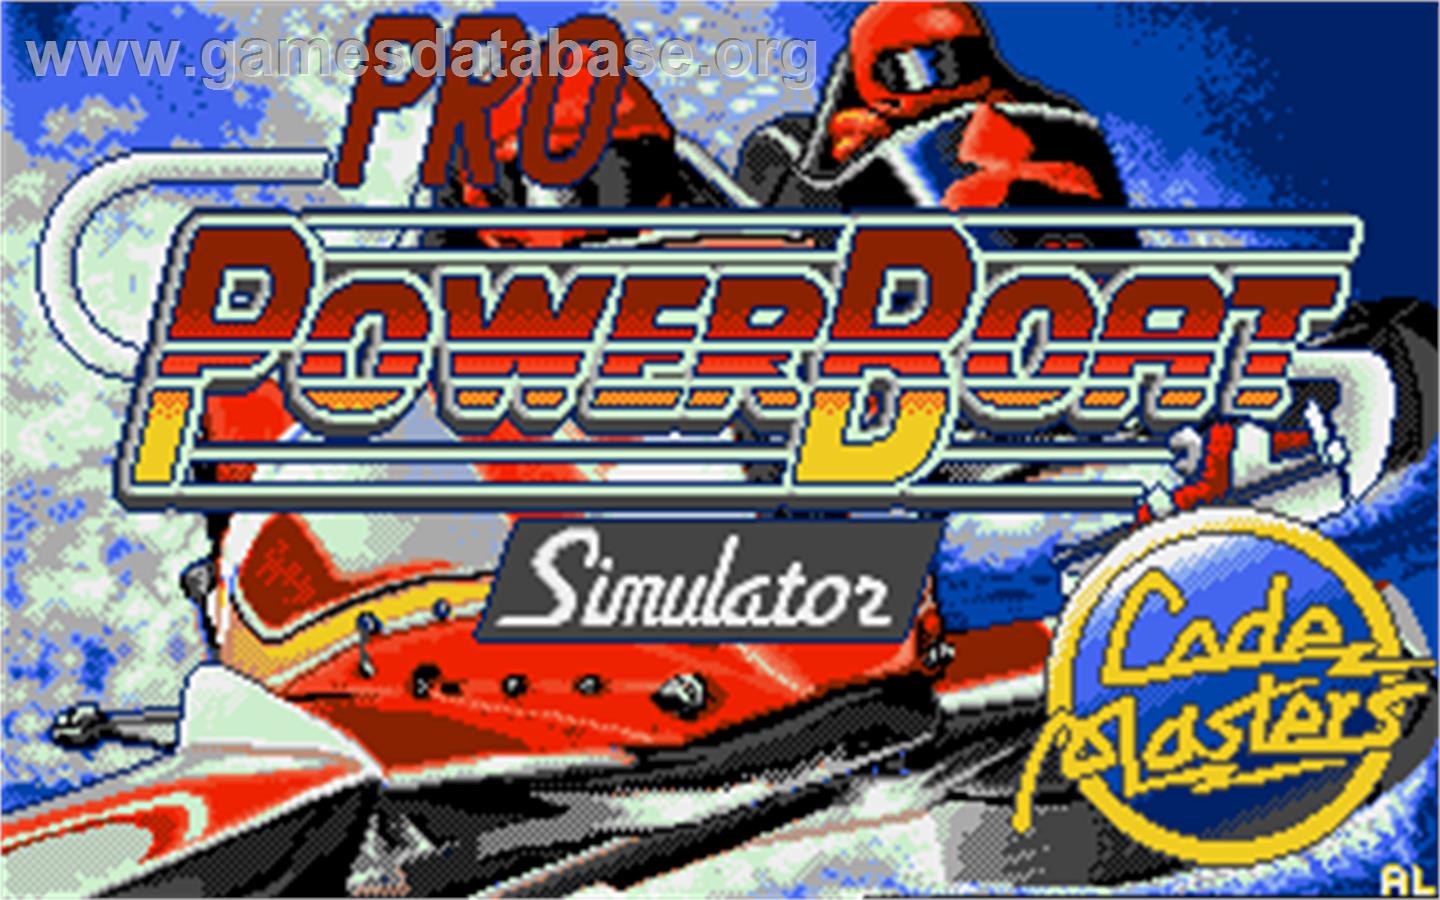 Pro Powerboat Simulator - Atari ST - Artwork - Title Screen